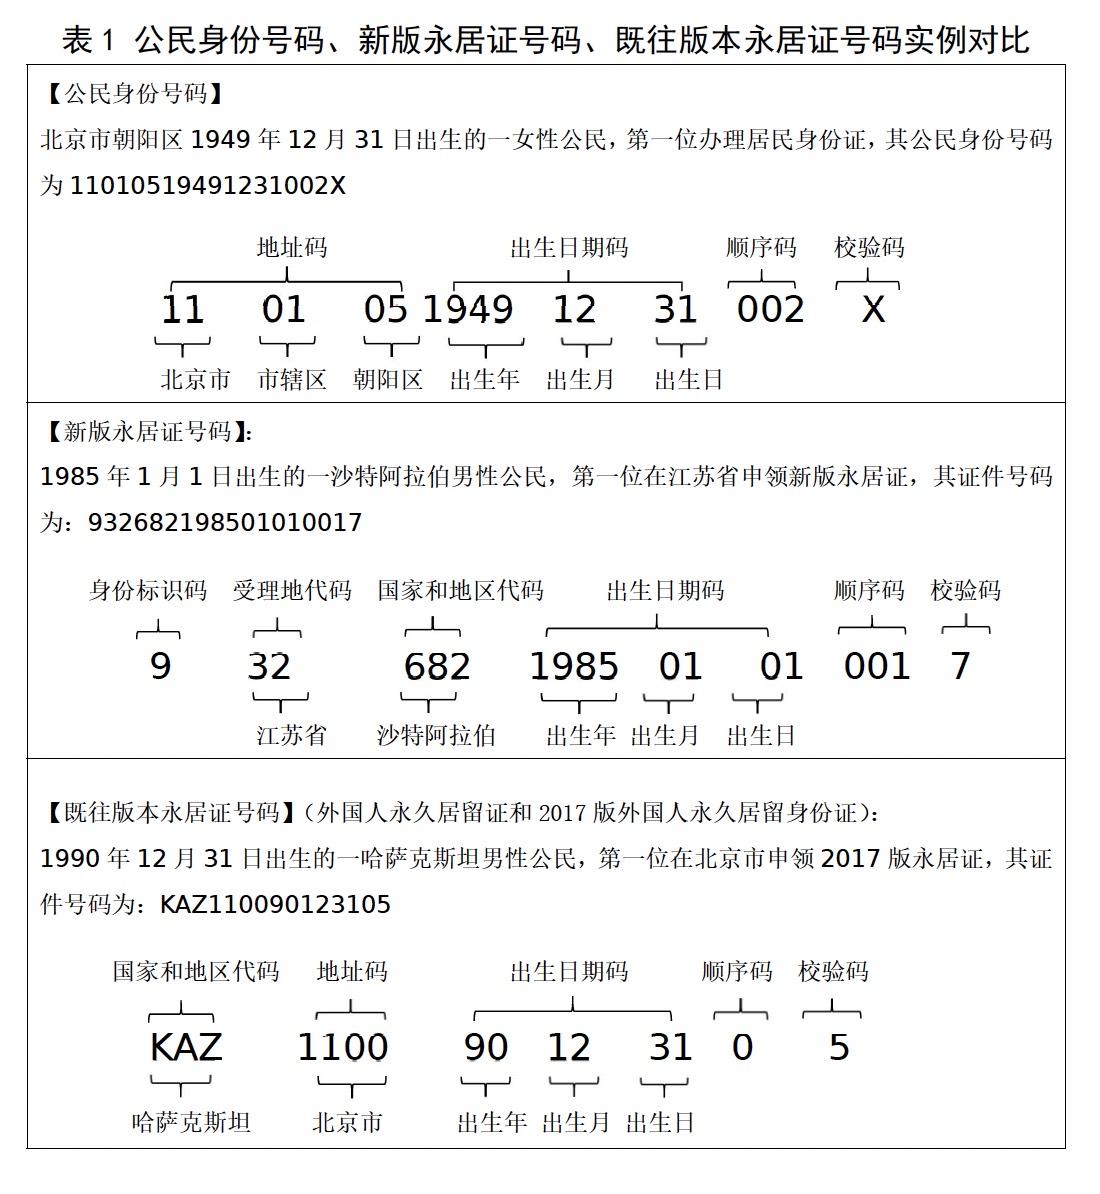 中华人民共和国国家标准图册_360百科